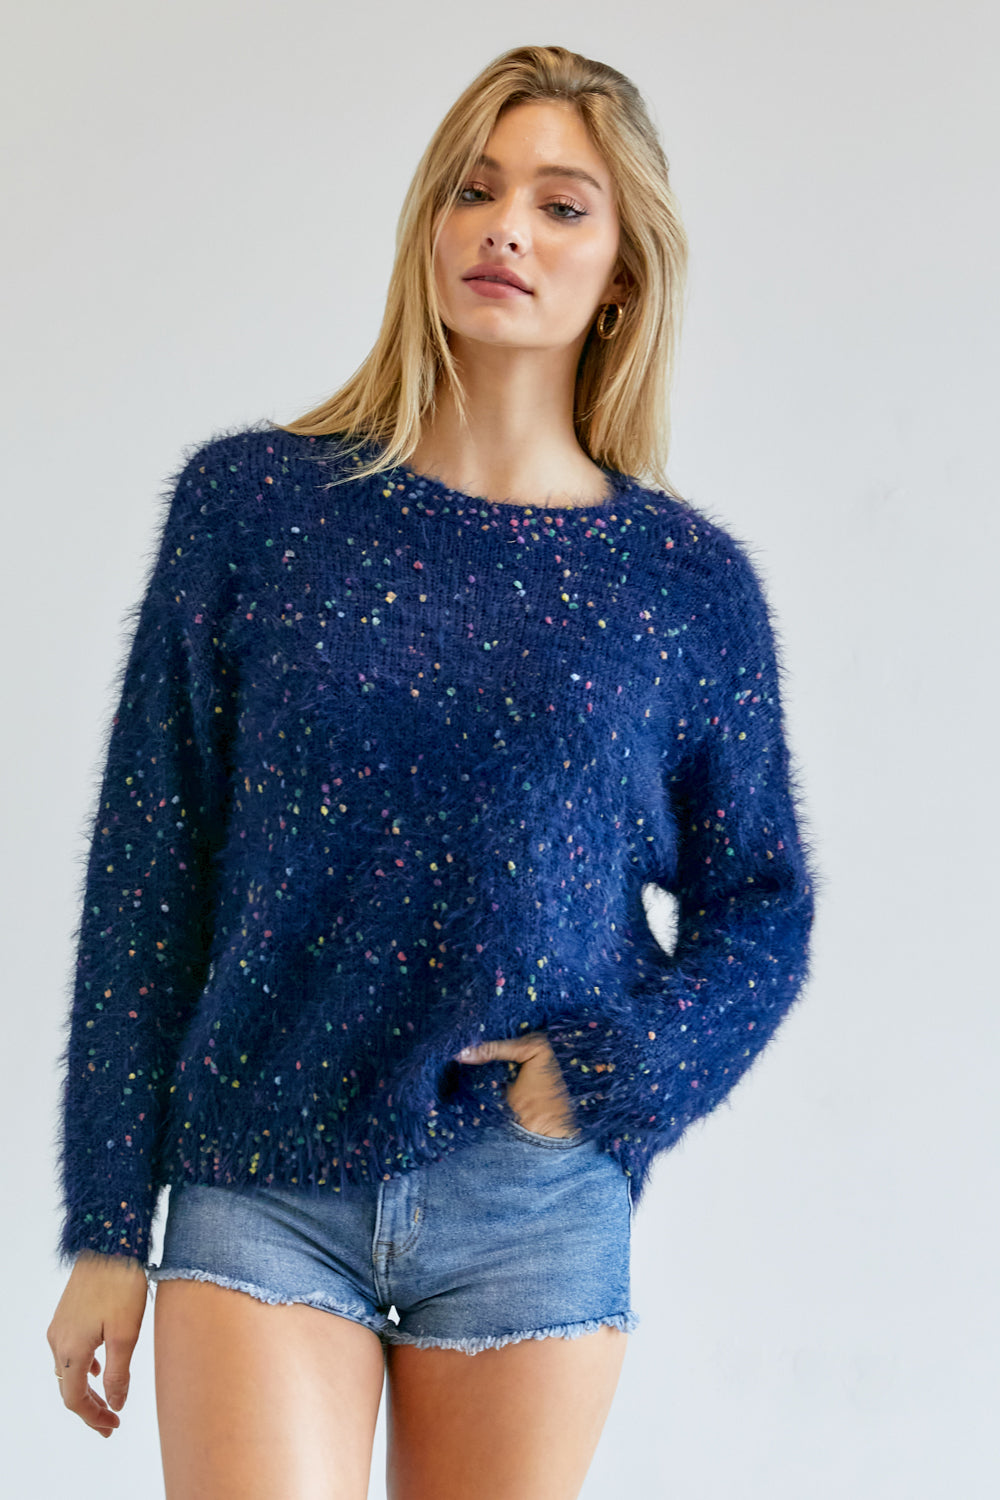 Women's Cute Multi Color Polak Dot Sweater